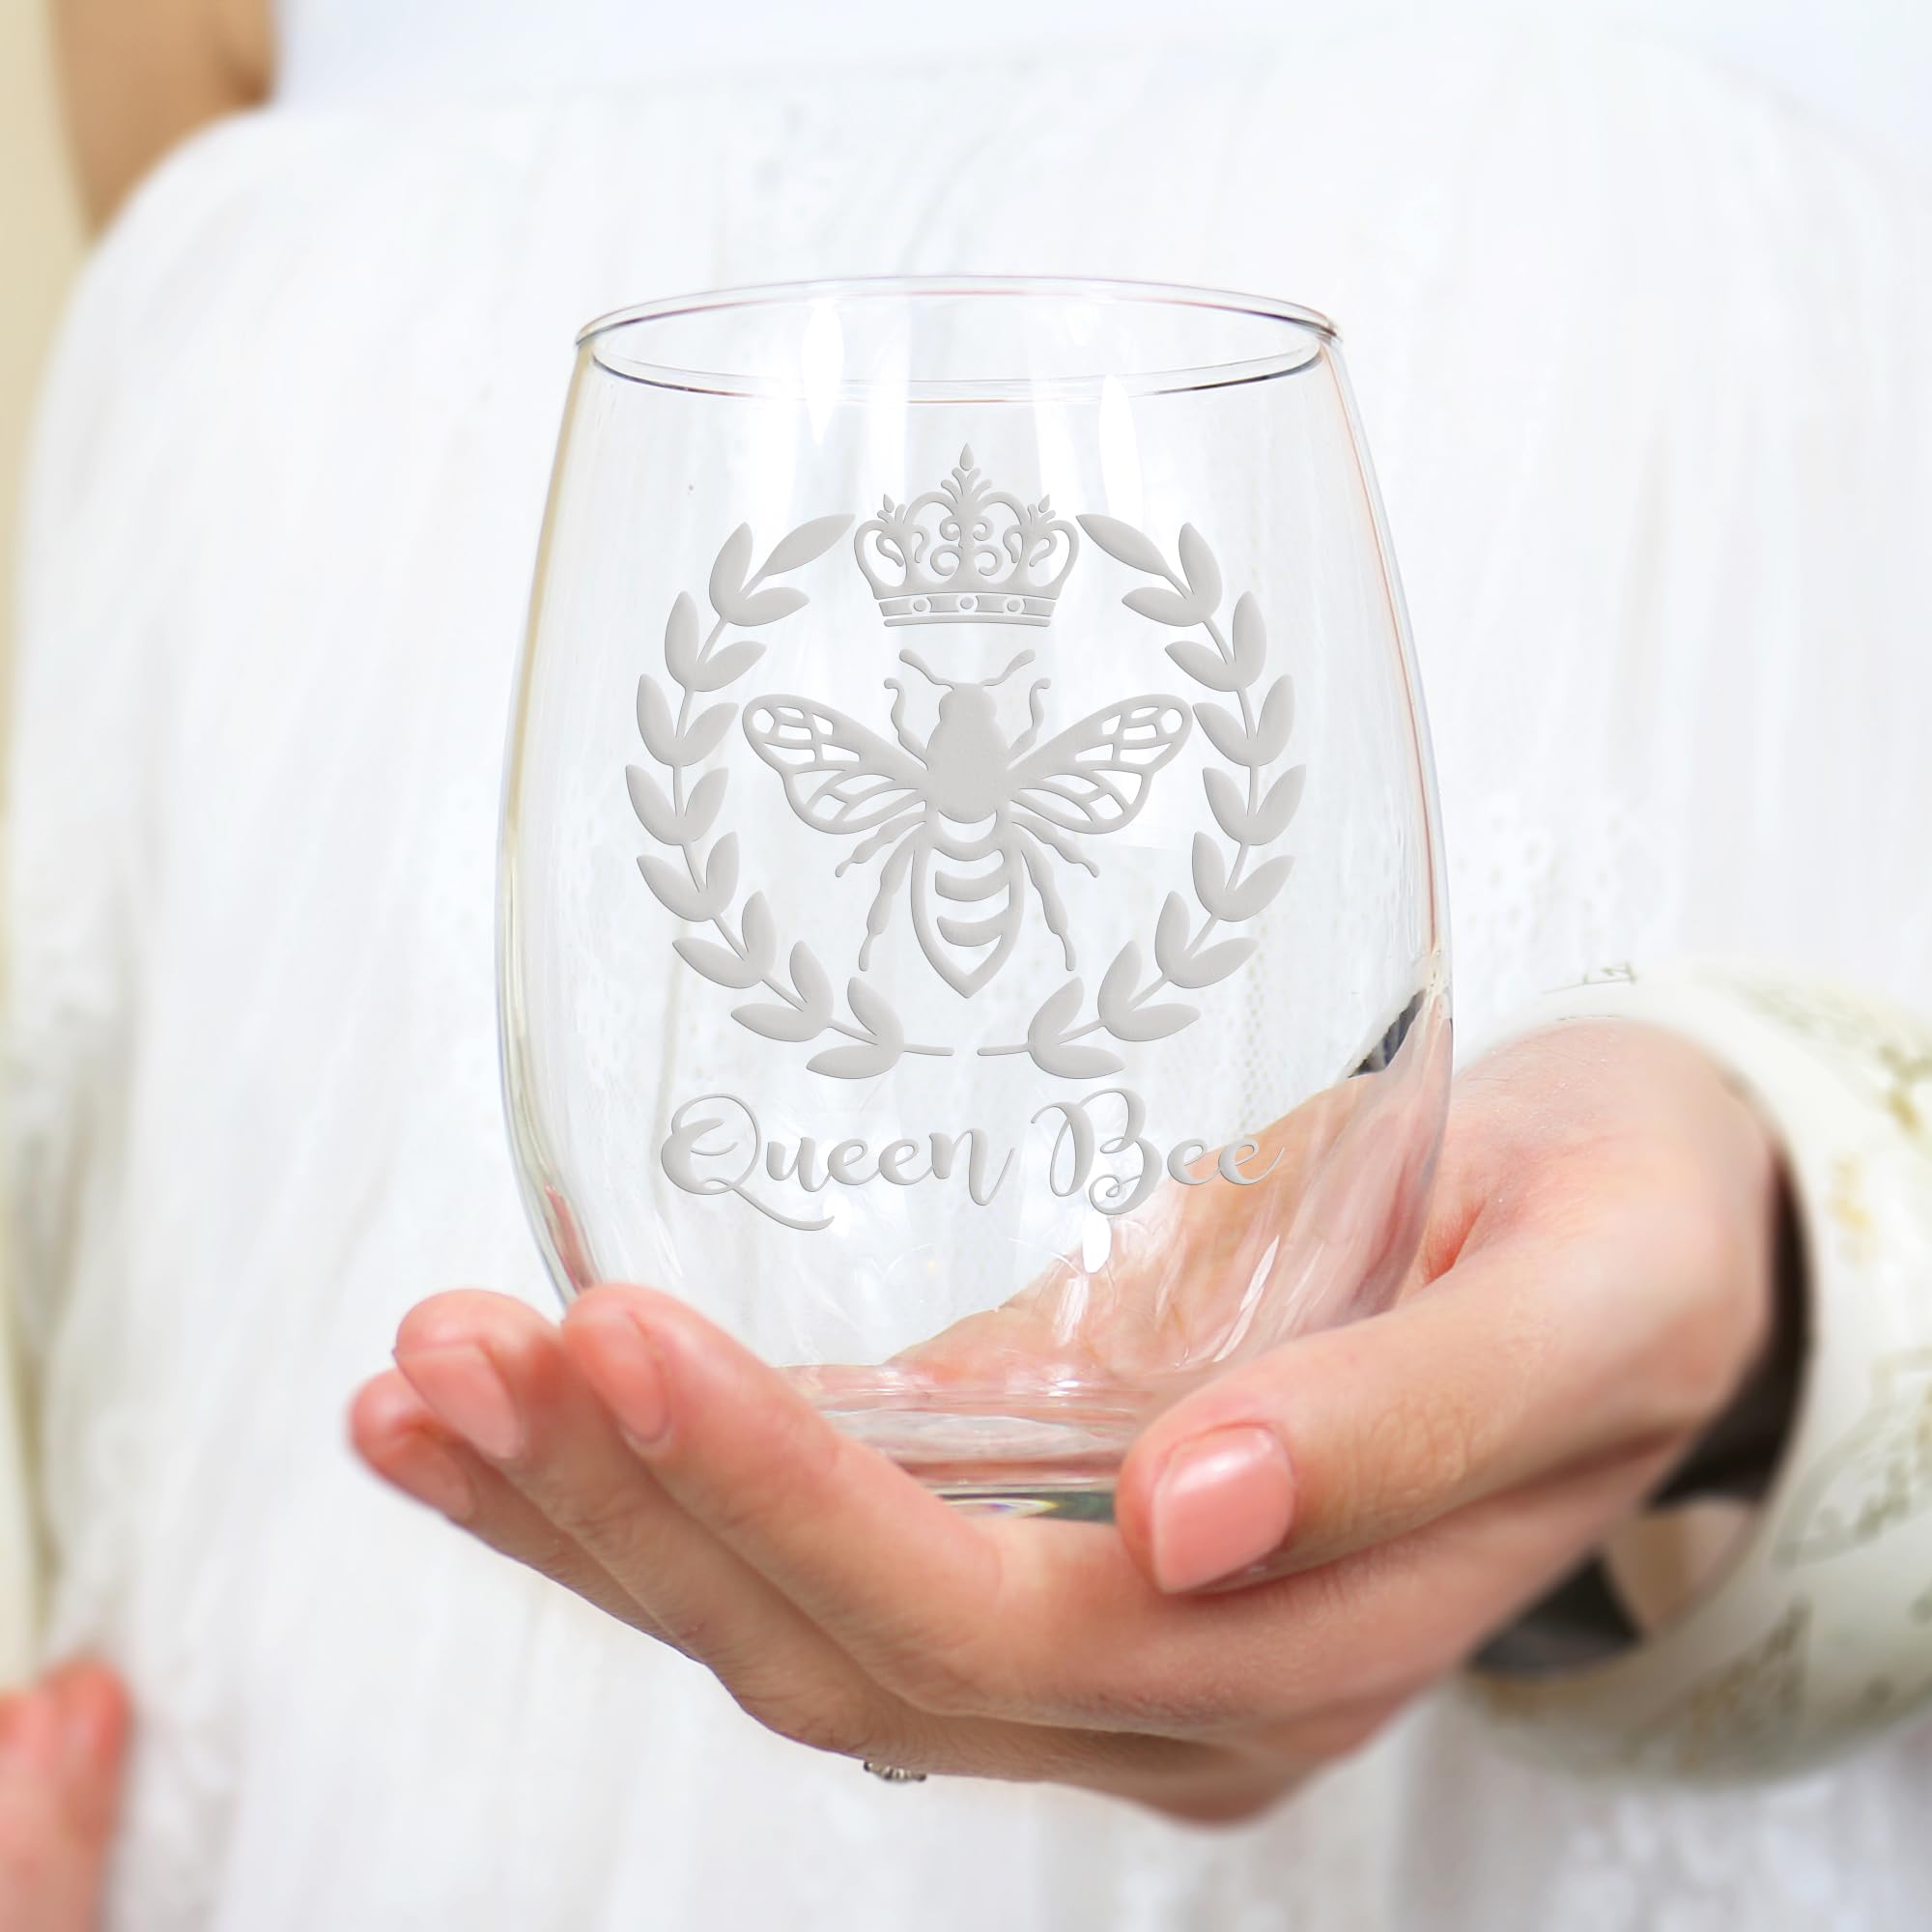 Queen Bee Stemless Wine Glass - Queen Bee Gift, Boss Gift, Girl Power Gift, Girl Boss Gift, Queen Bee Wine Glass, Boss Wine Glass